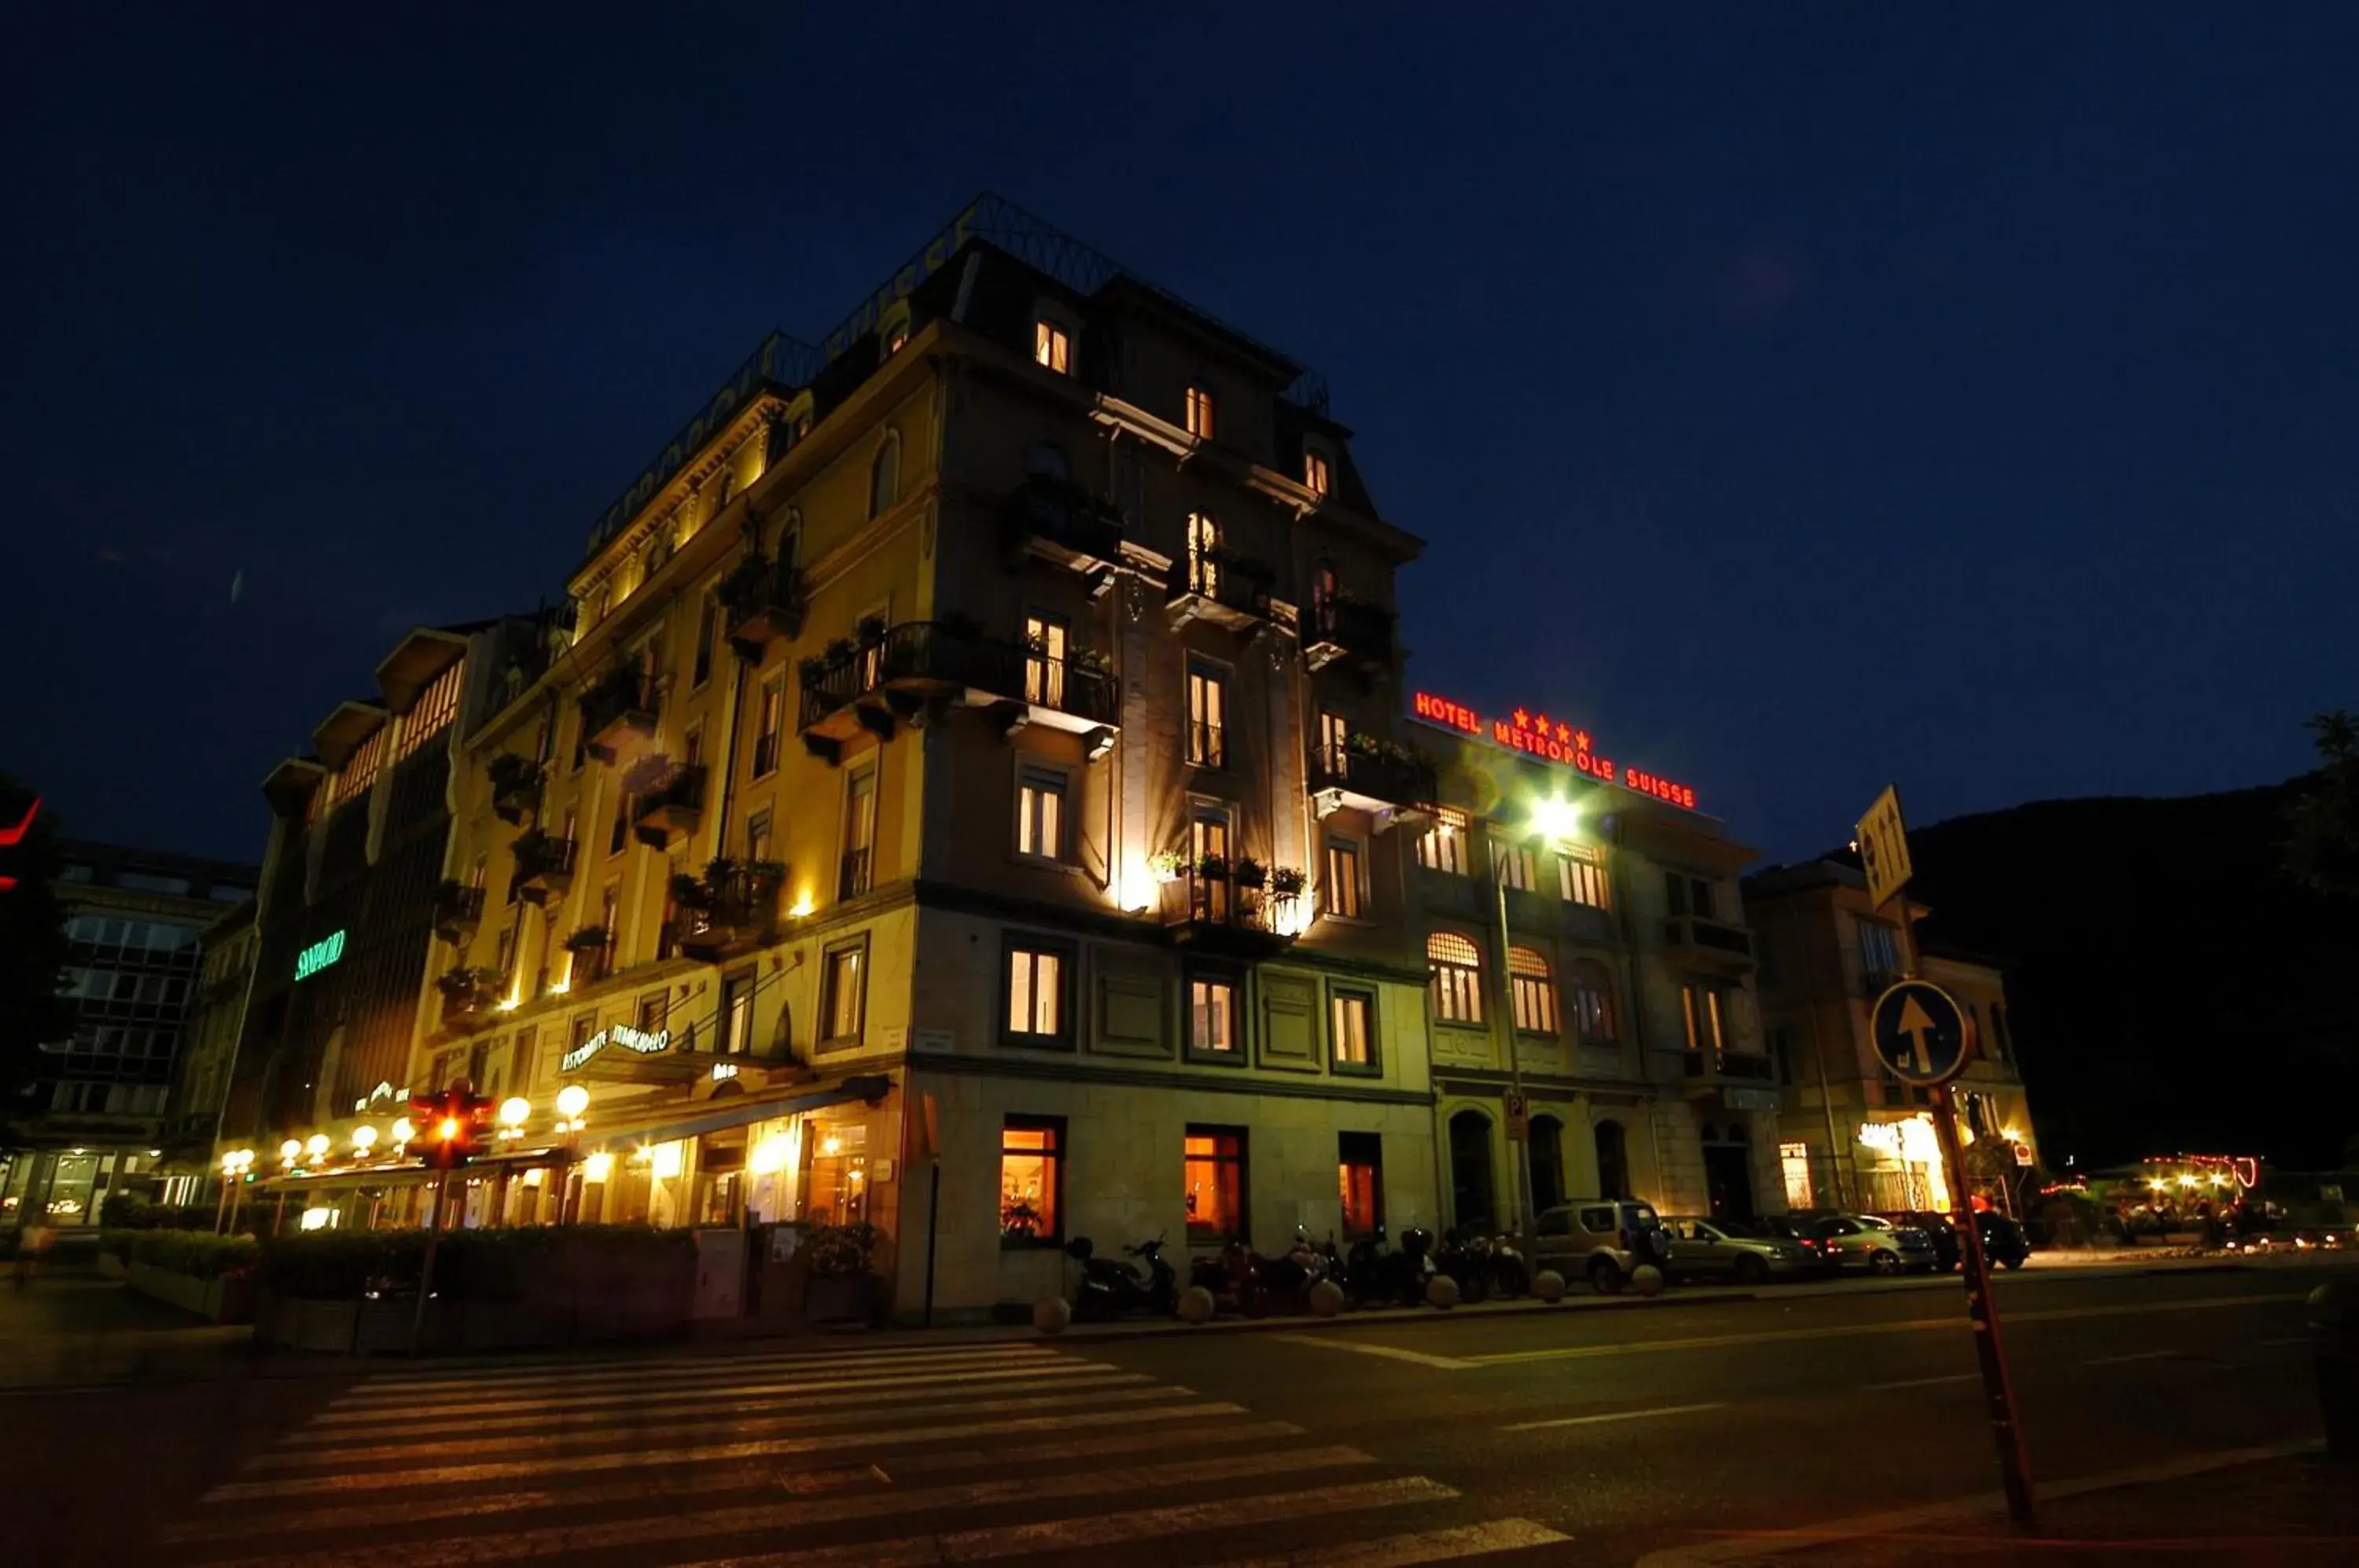 Facade/entrance, Property Building in Hotel Metropole Suisse